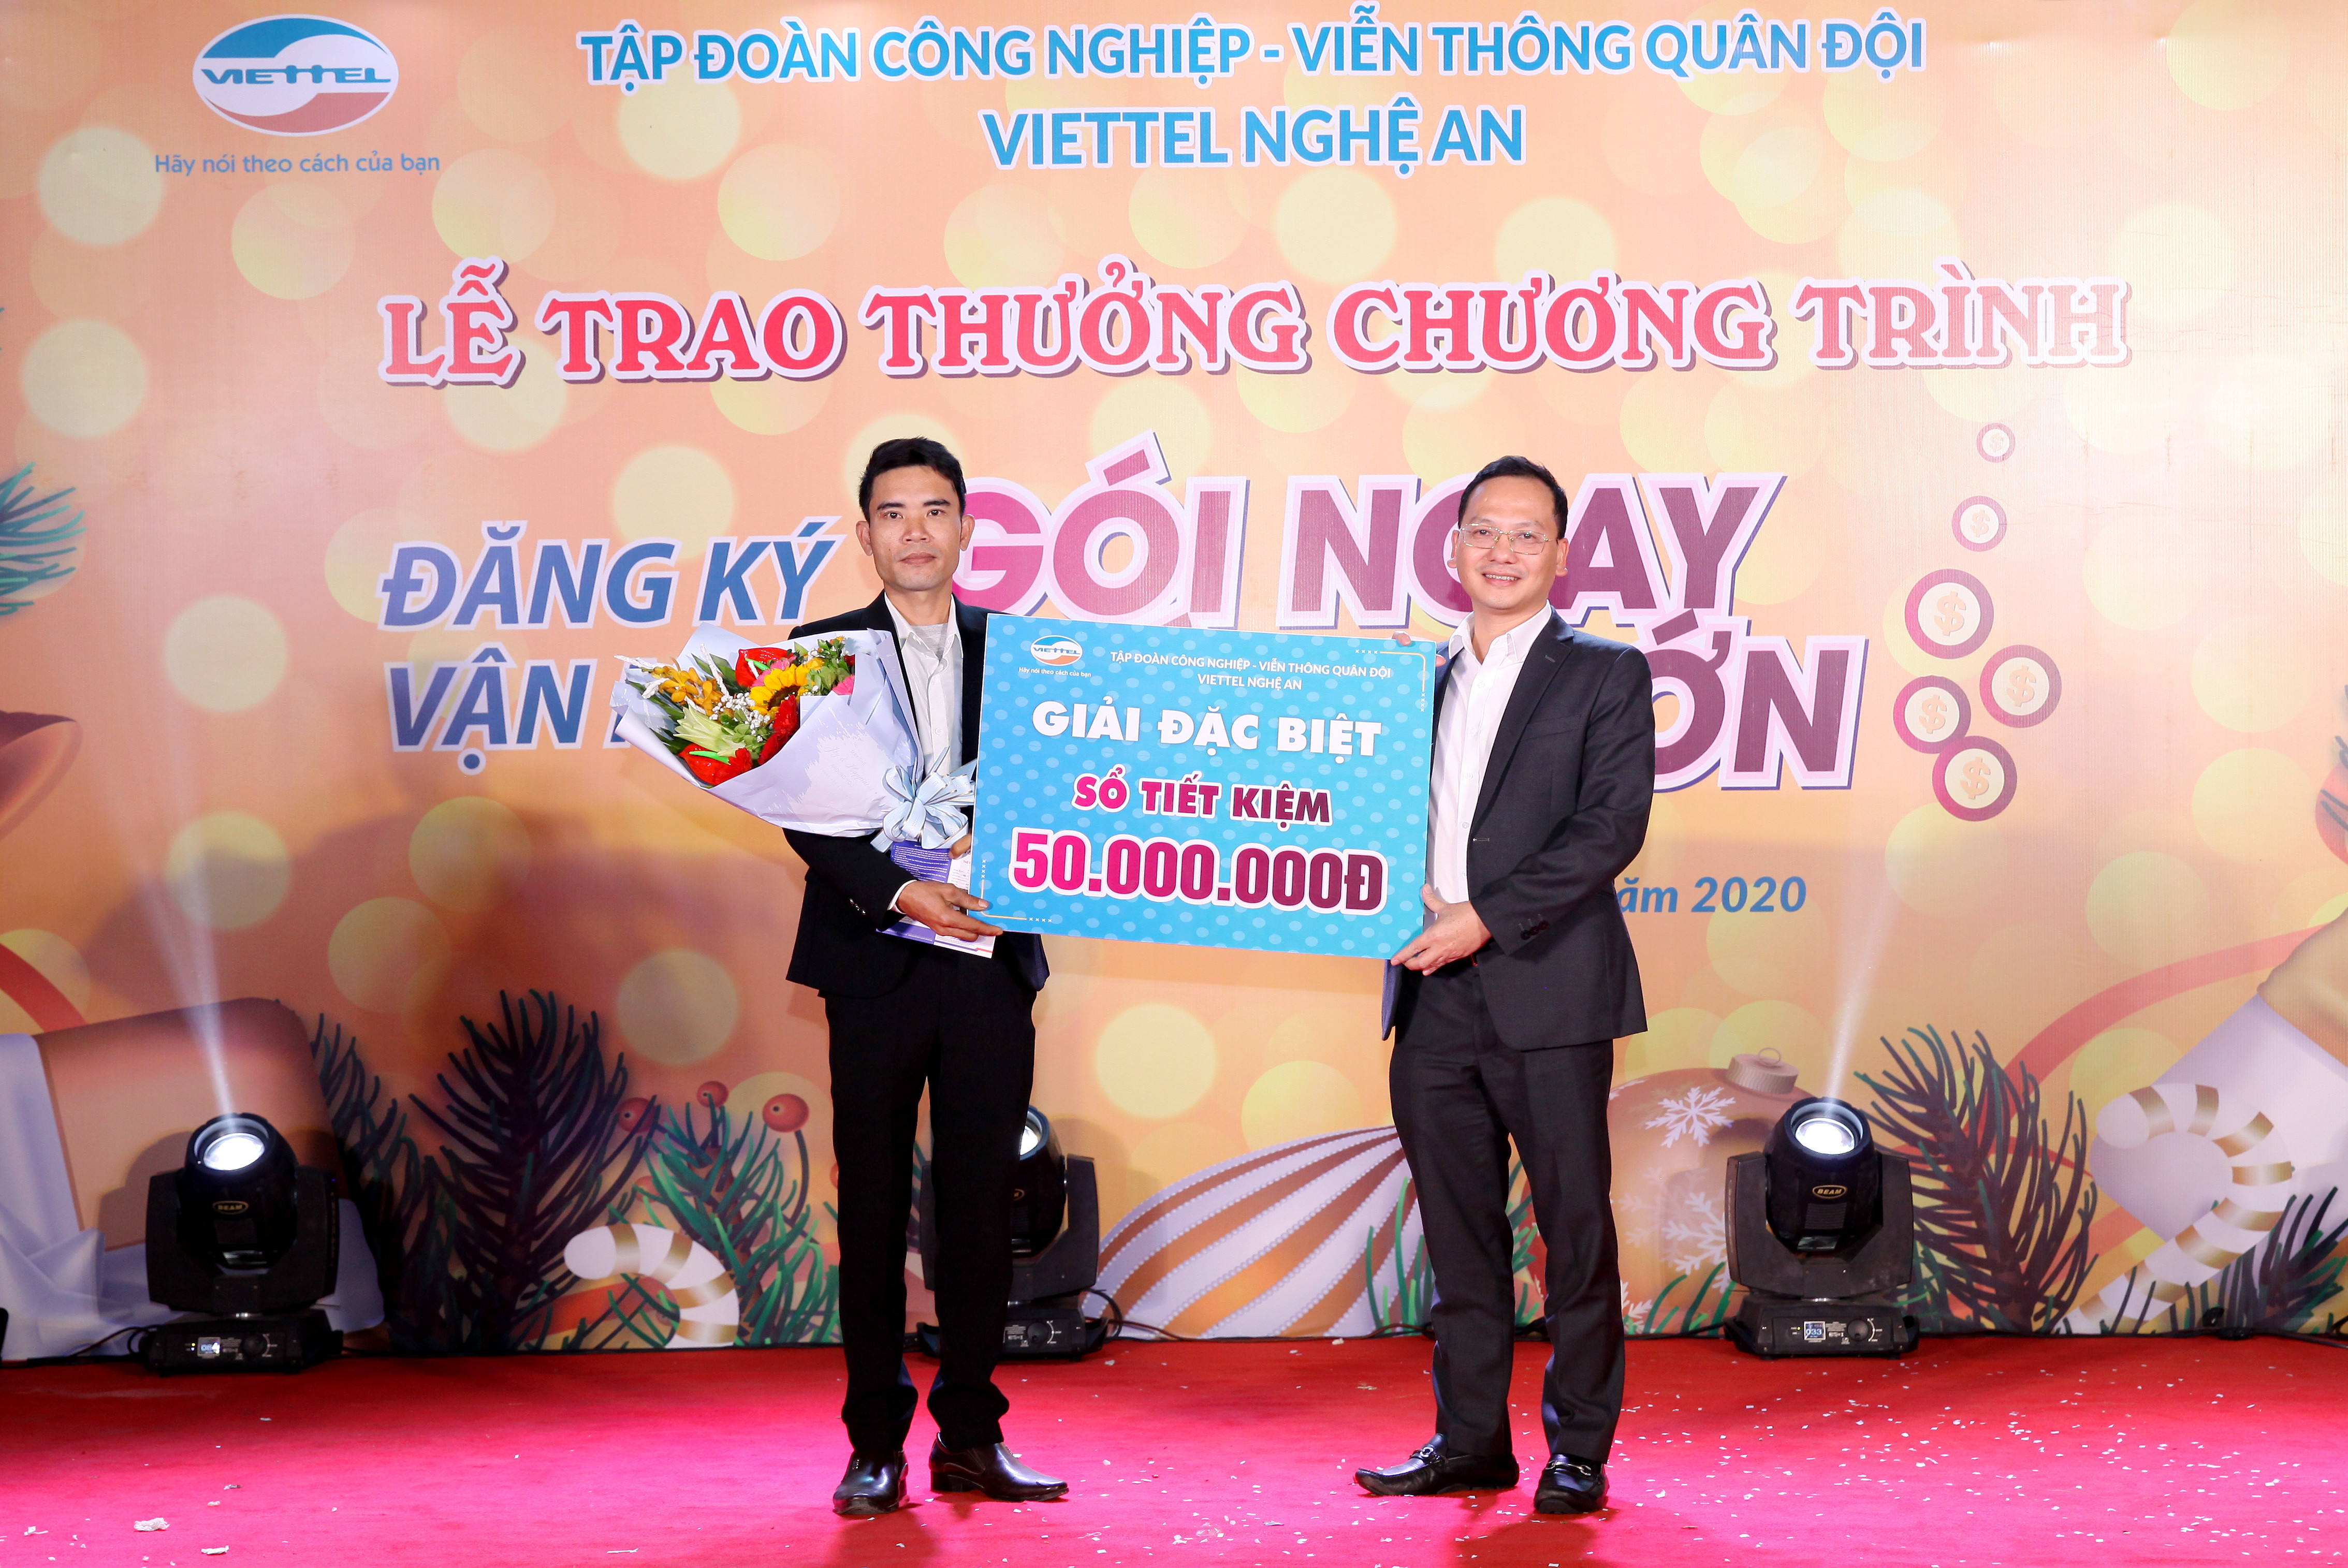 Ông Nguyễn Cảnh Hòa- Giám đốc Viettel Nghệ An trao giải đặc biệt cho khách hàng may mắn nhất.